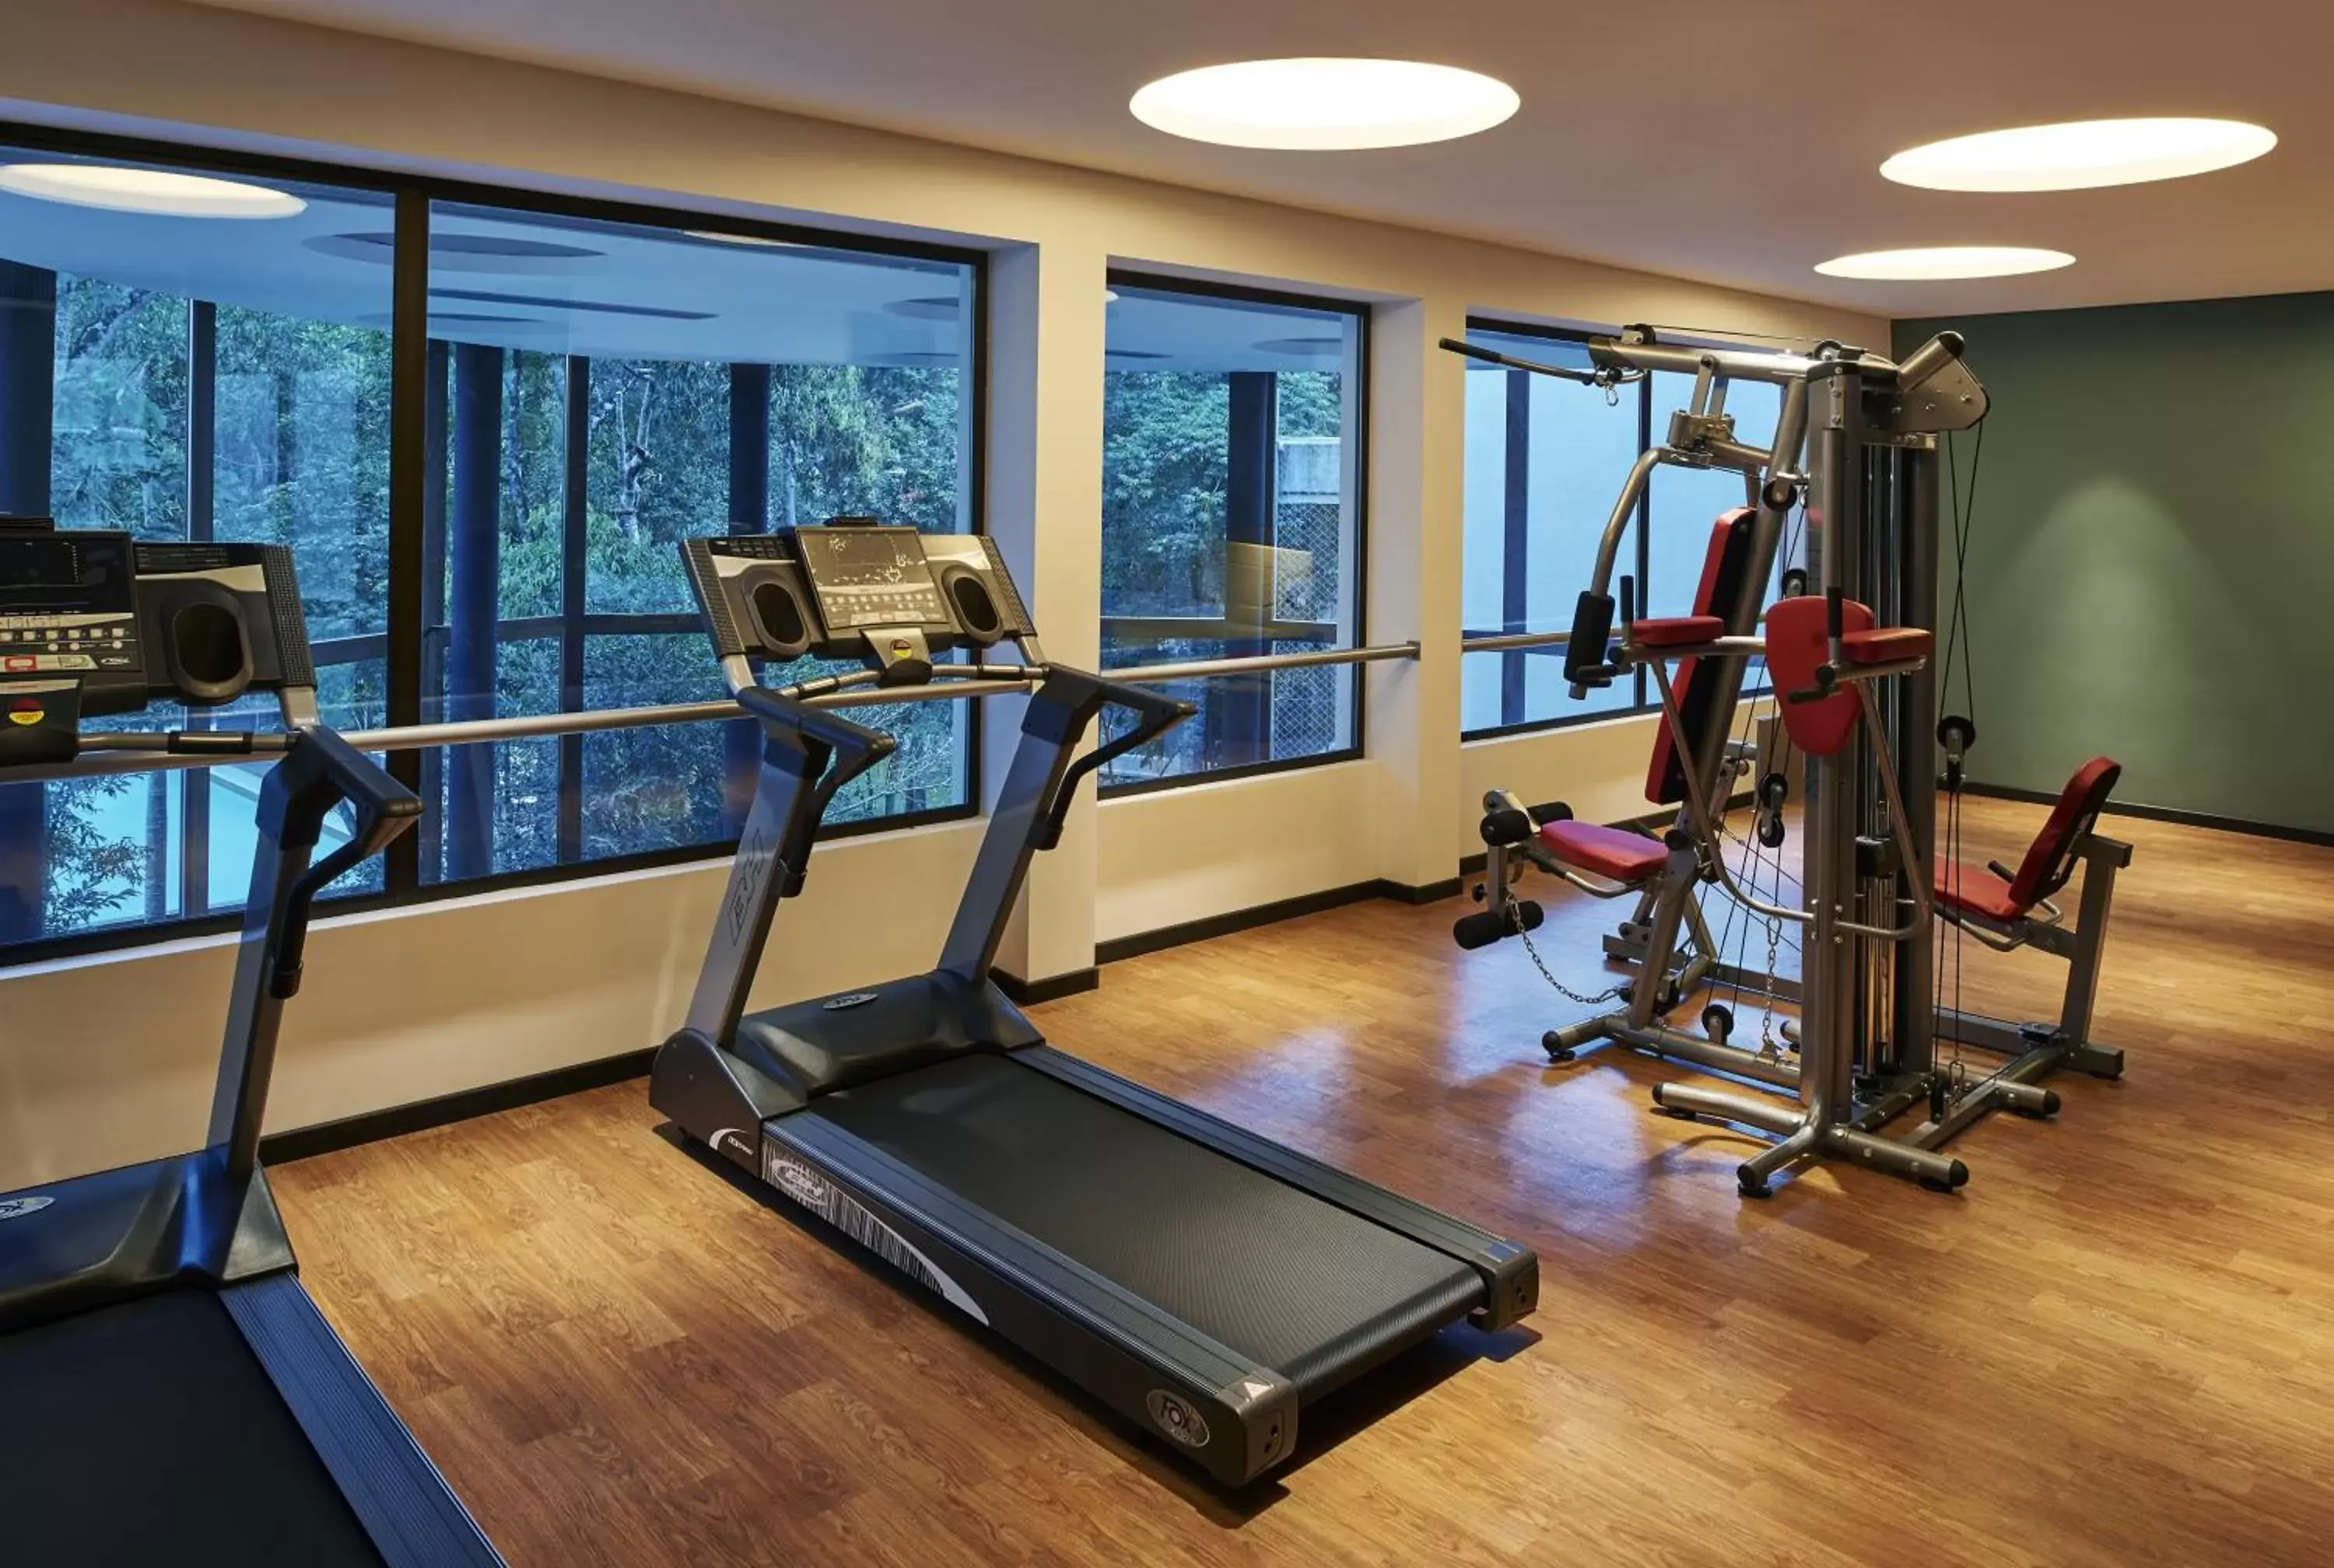 Fitness centre/facilities, Fitness Center/Facilities in Mercure Iguazu Hotel Iru